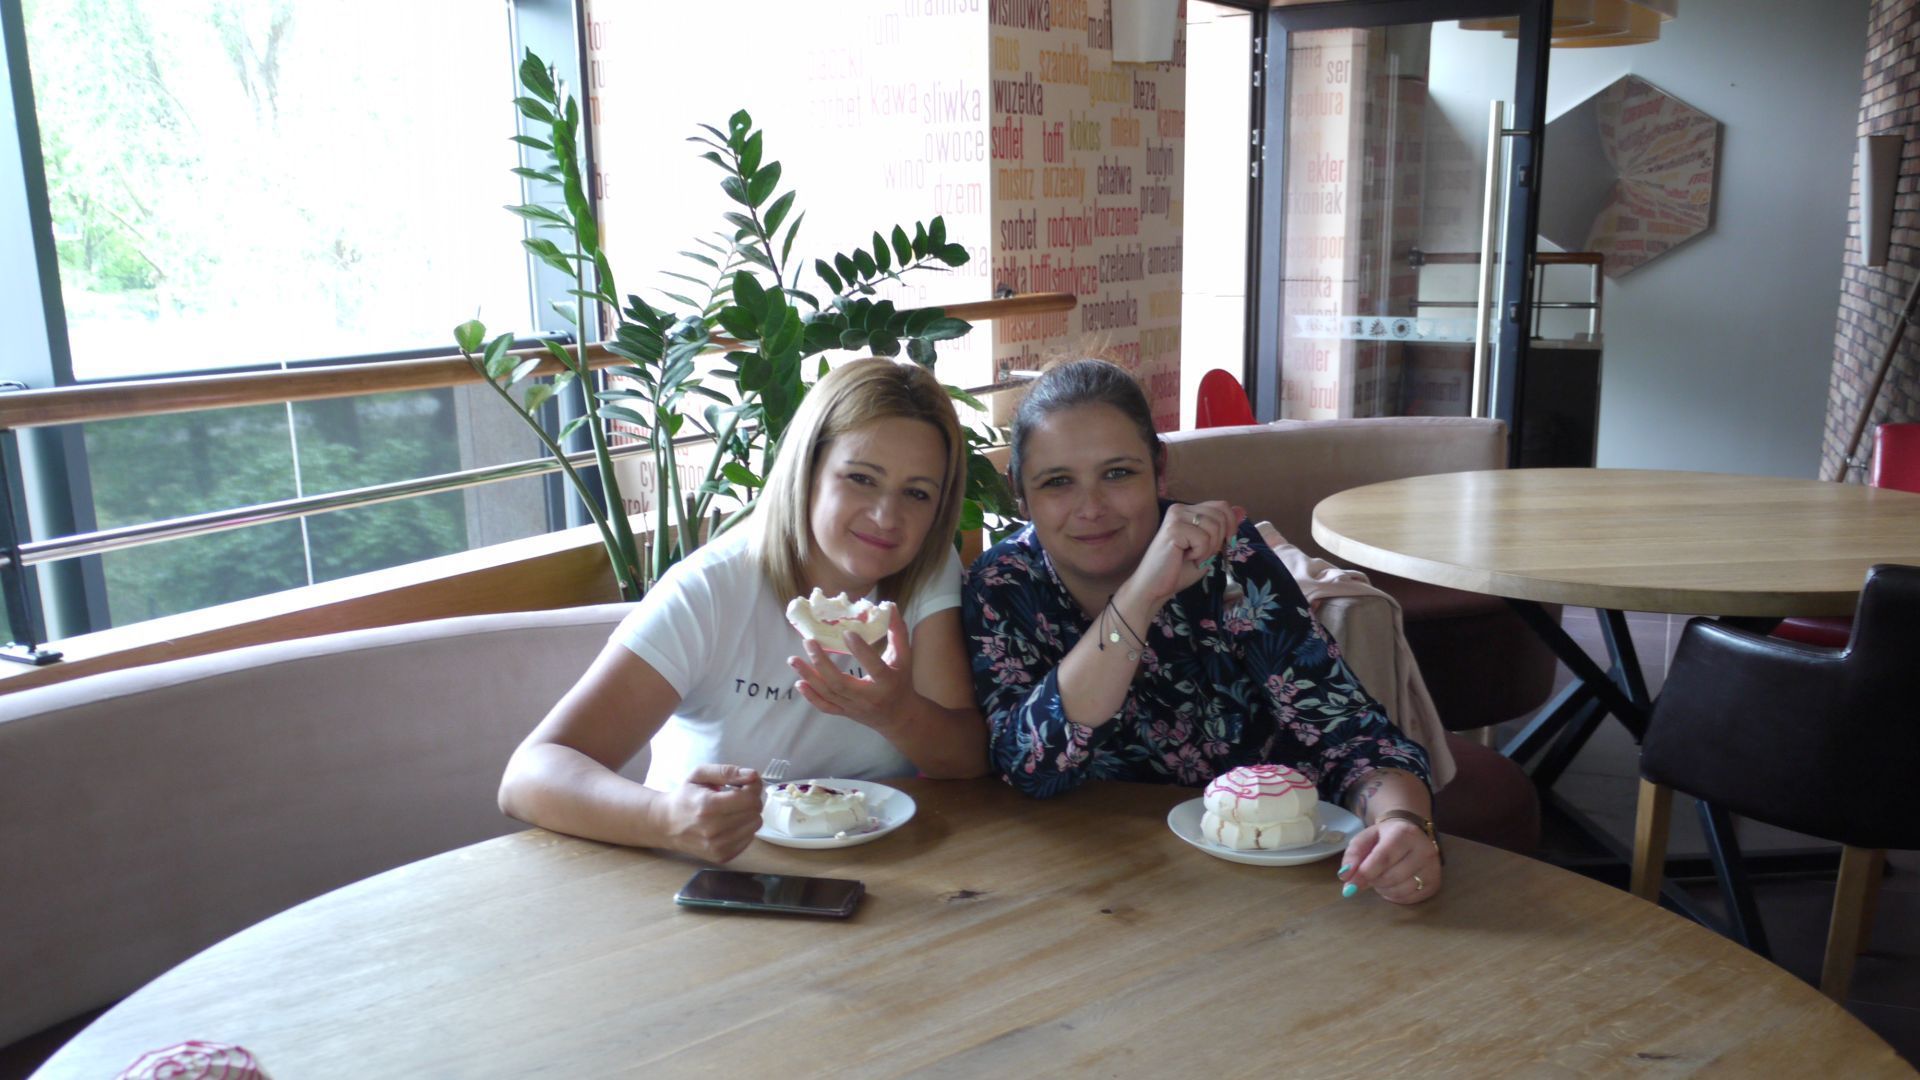 Pani Kasia i pani Sylwia jedzące ciastka.